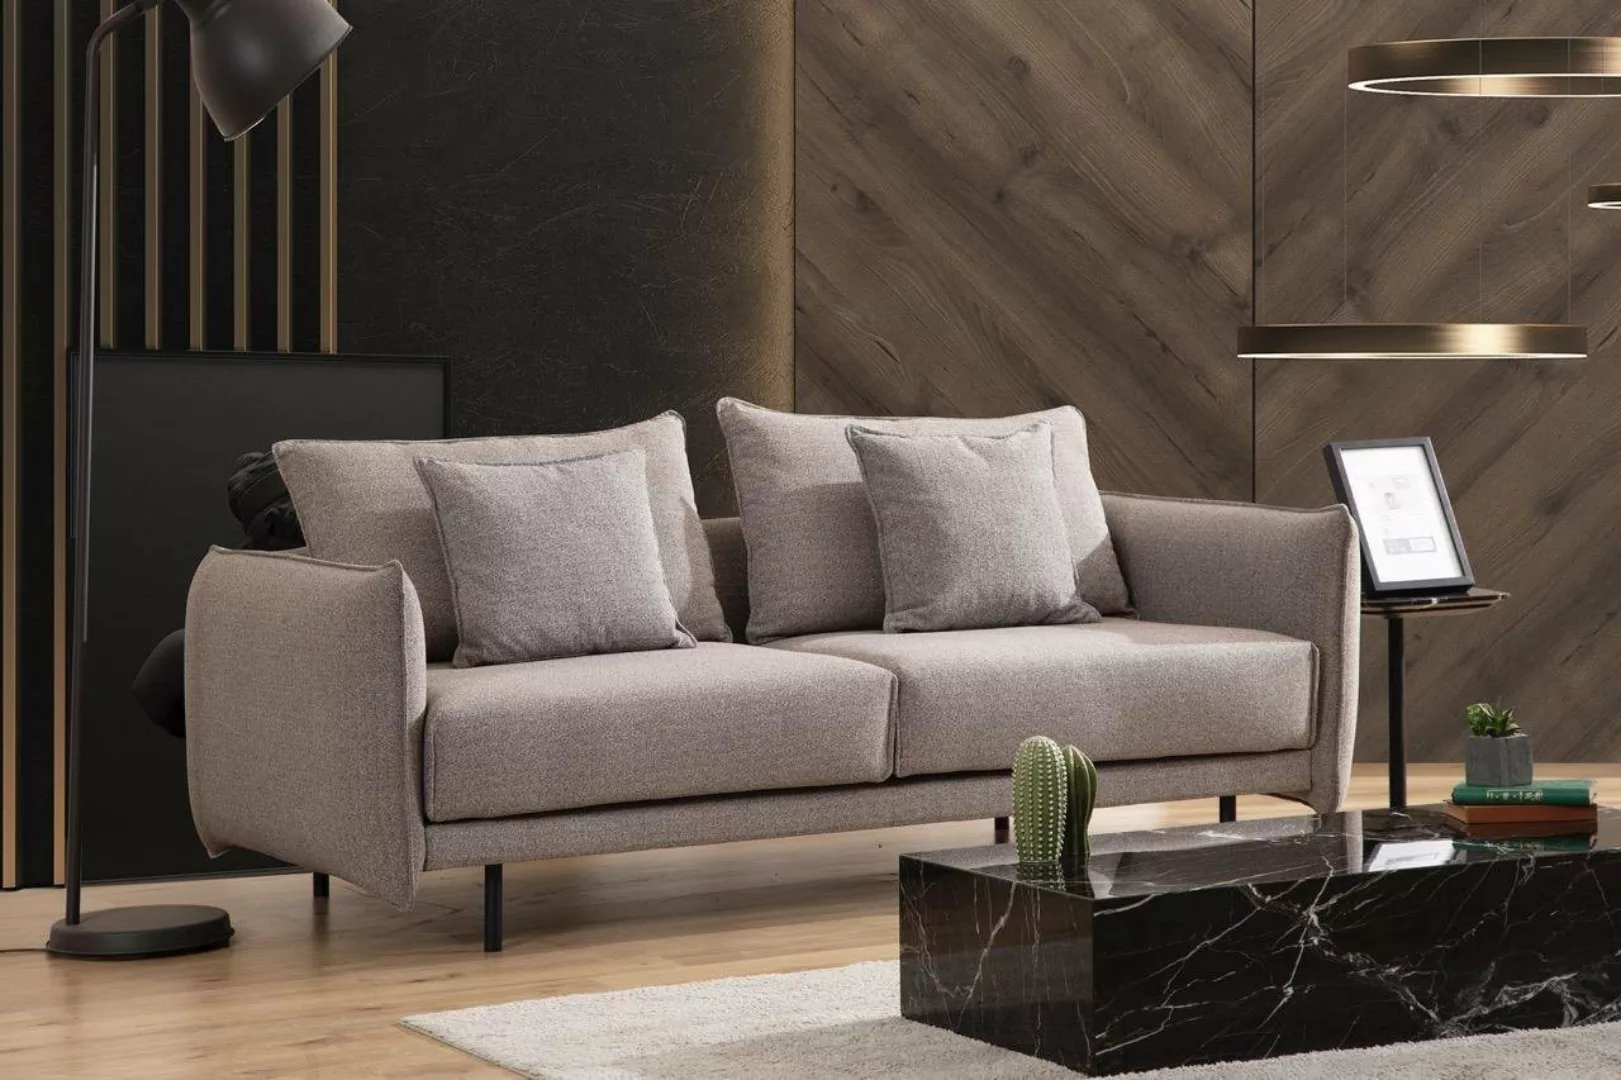 JVmoebel 3-Sitzer Dreisitzer Couch Sofa Möbel Einrichtung Couchen Sofas Pol günstig online kaufen